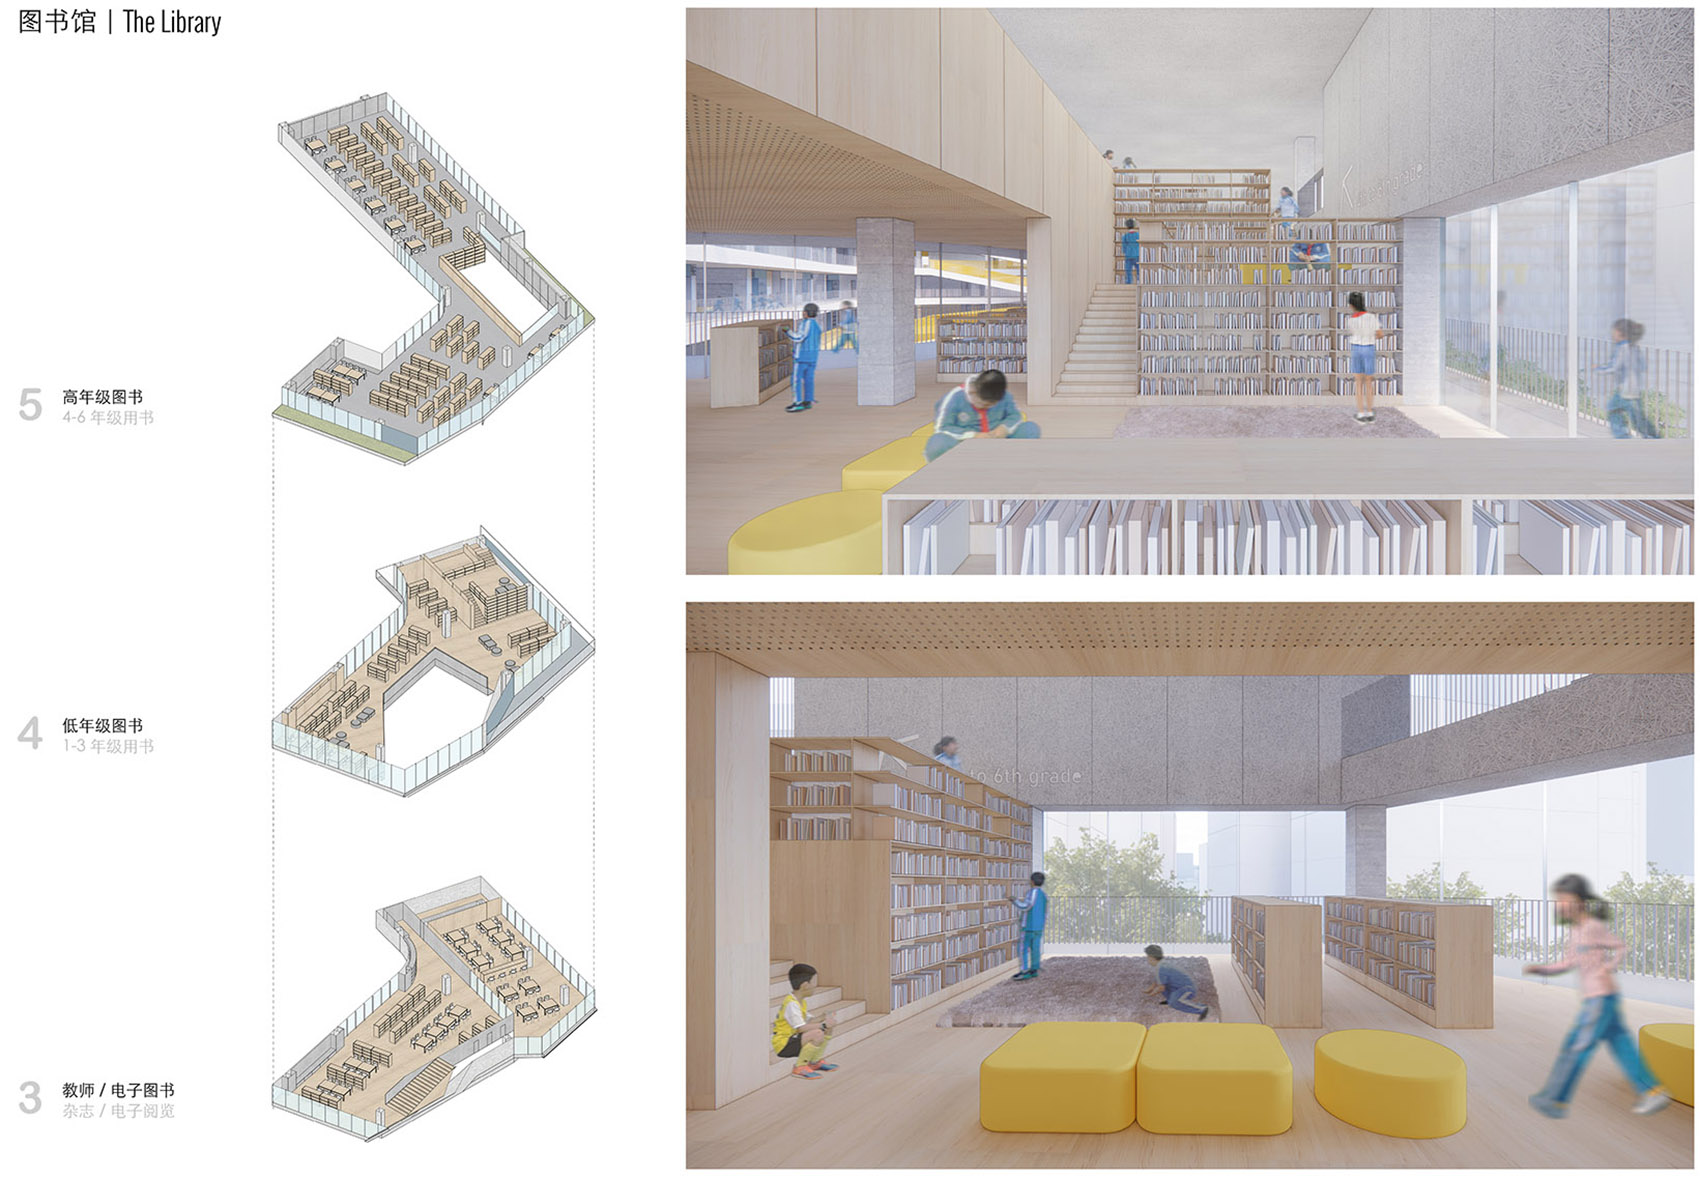 重叠校园：莲花小学校园设计，深圳/高密度垂直分区式校园-29